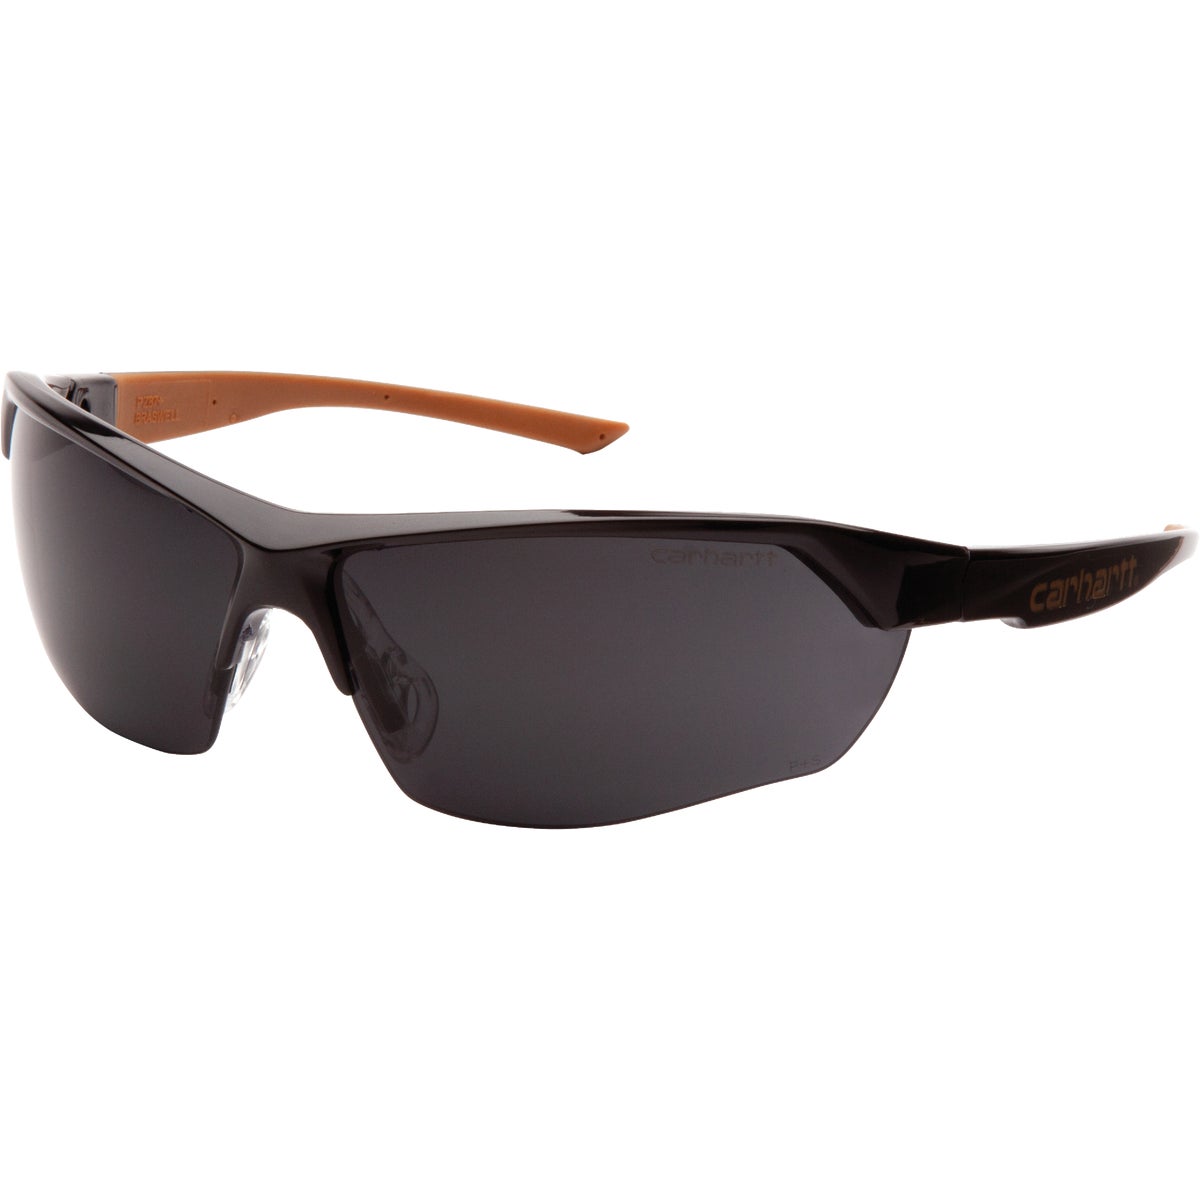 Carhartt Braswell Black Frame Safety Glasses with Gray Anti-Fog Lenses